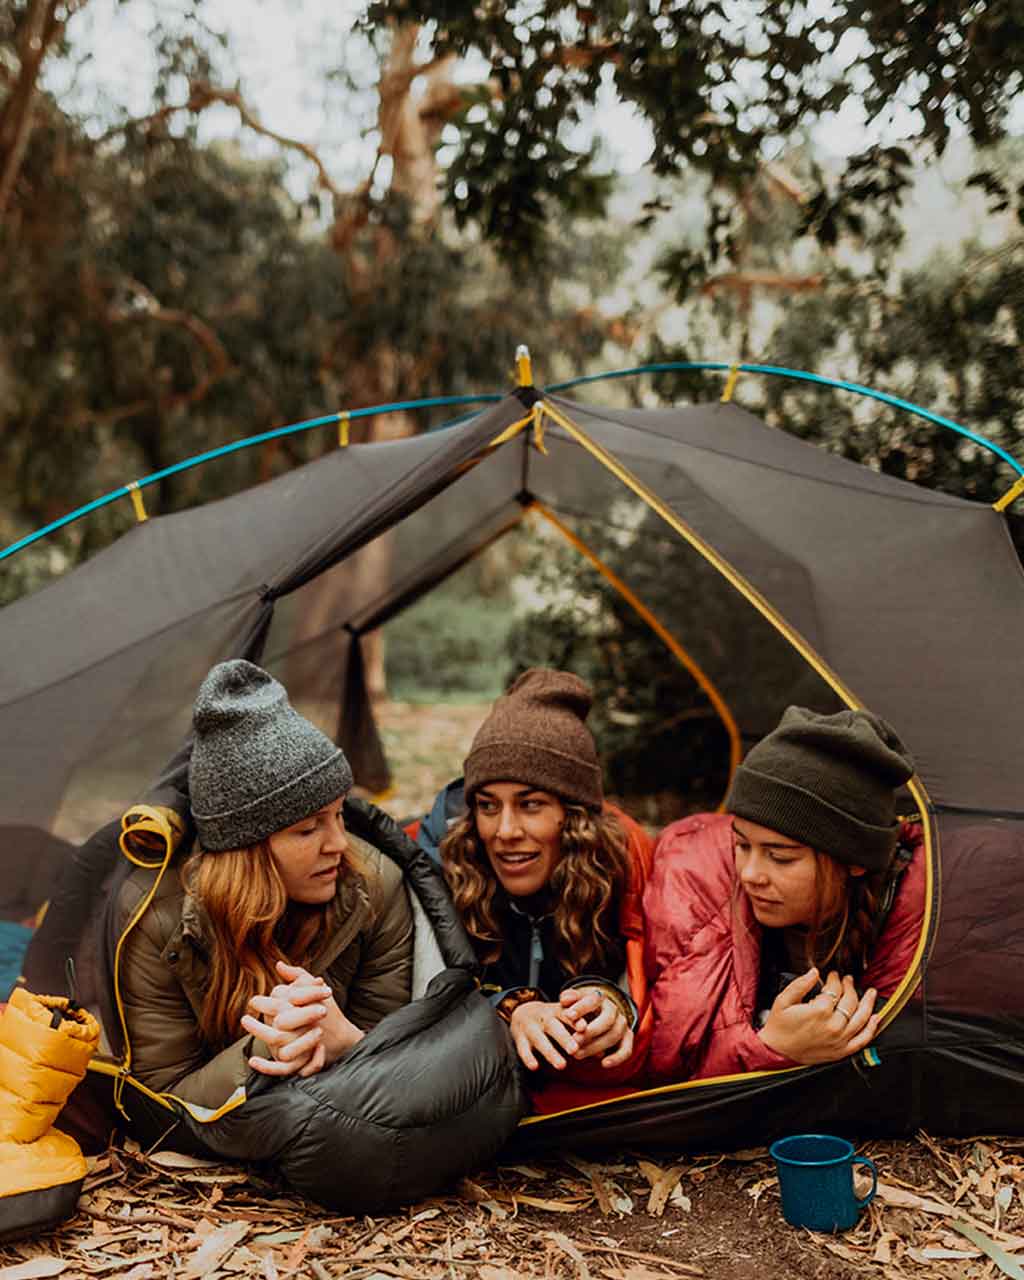 Sierra Designs UK  Backpacking Rucksacks, Tents & Sleeping Bags -  WildBounds